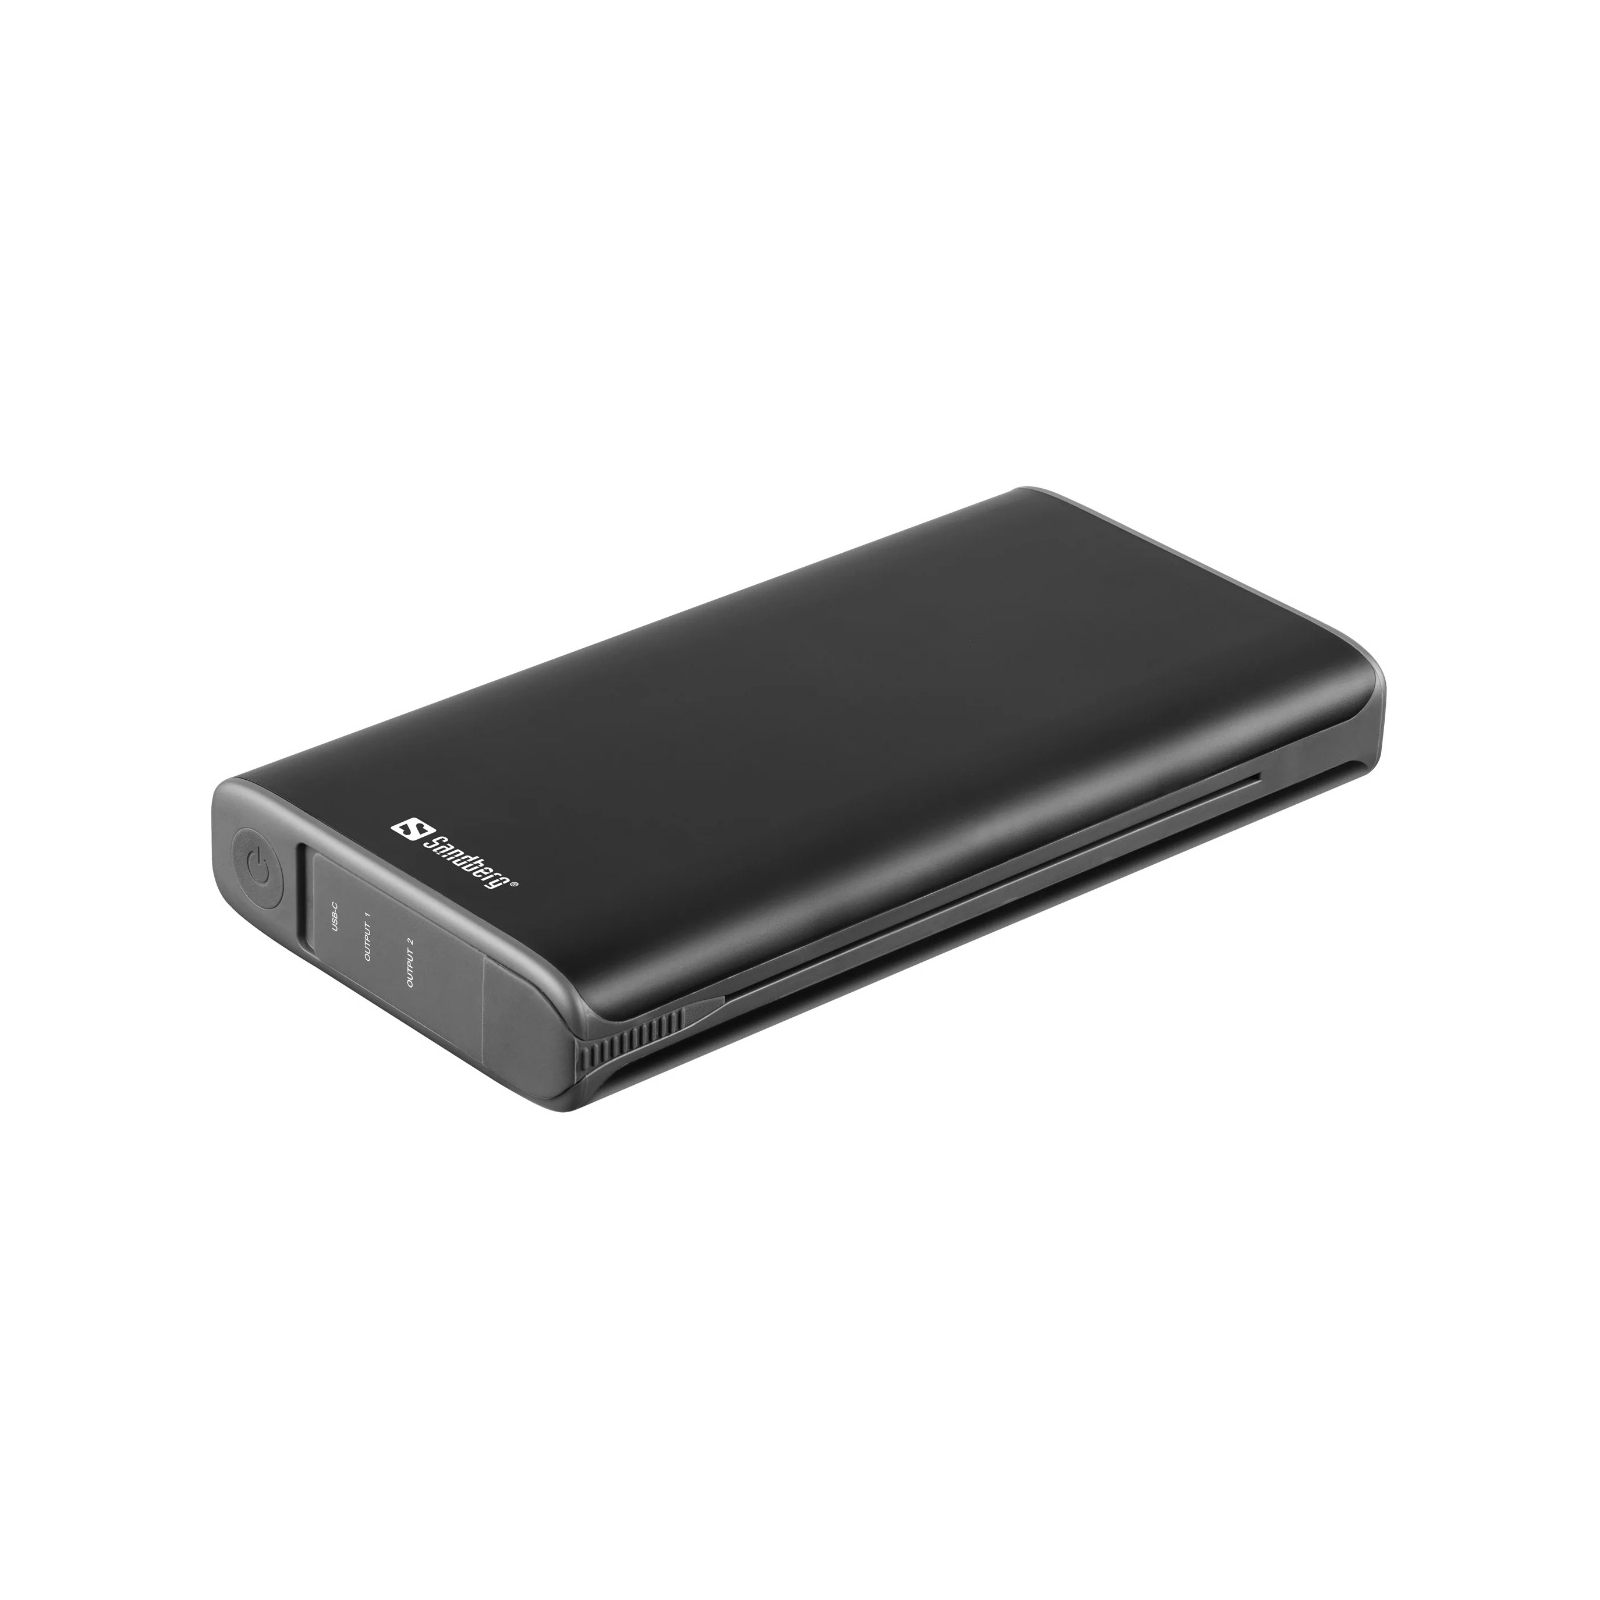 Батарея универсальная Sandberg 25000mAh, Solar 4-Panel/8W, USB-C input/output(18W max), USB-A*2/3A(Max) (420-56) изображение 3